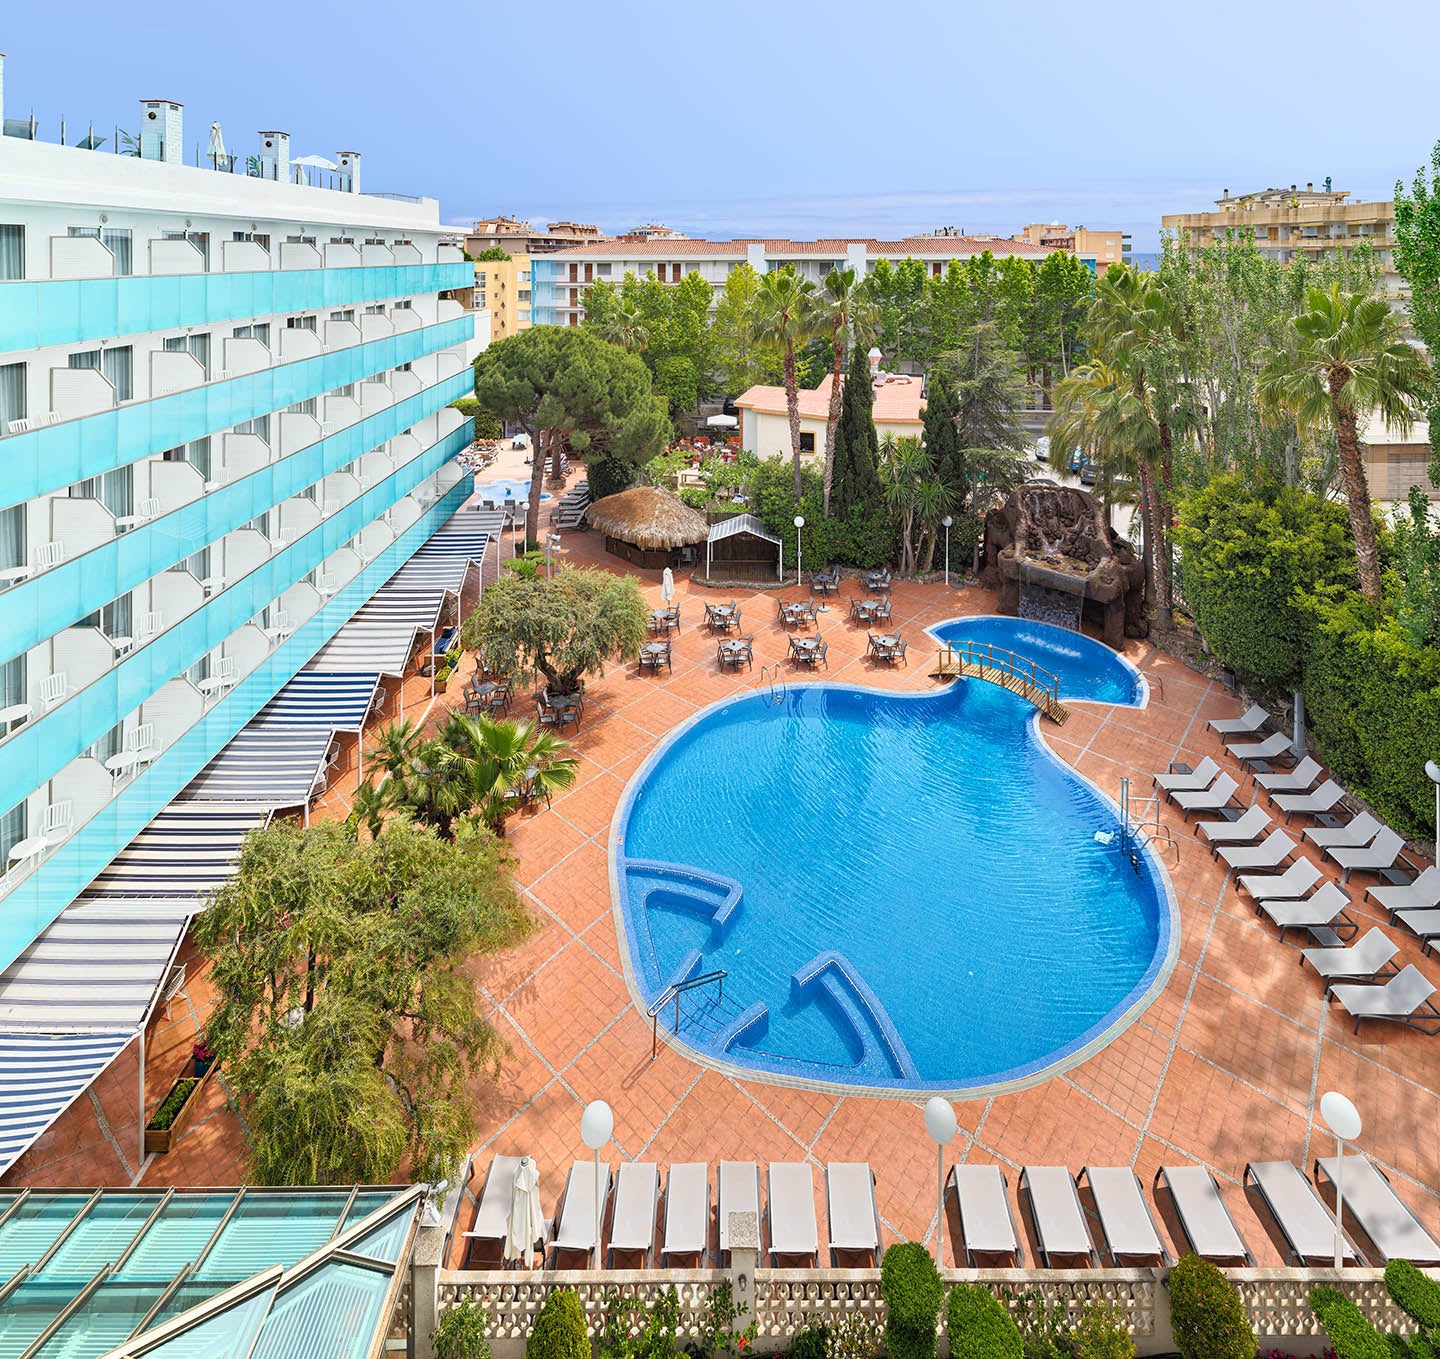 Vista generale dell'hotel e la piscina